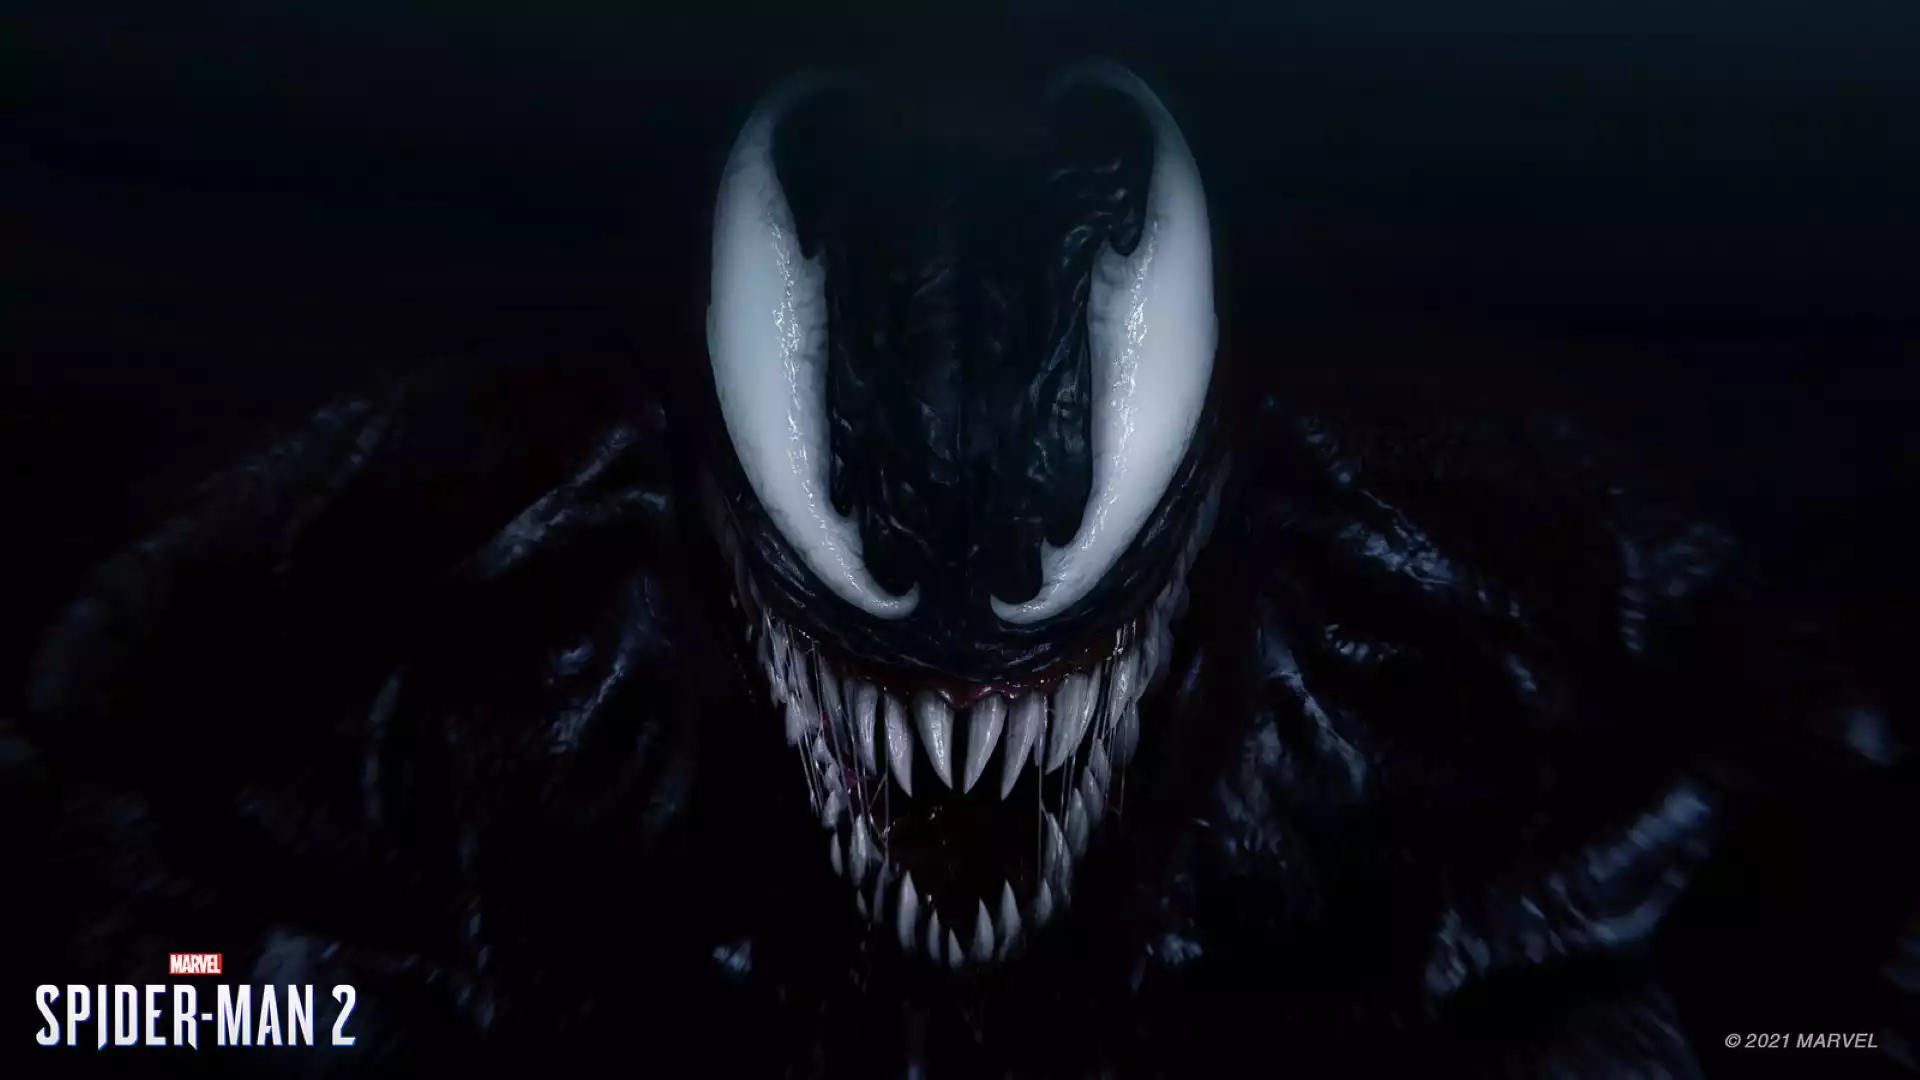 Spider-Man devs talk Venom spin-off